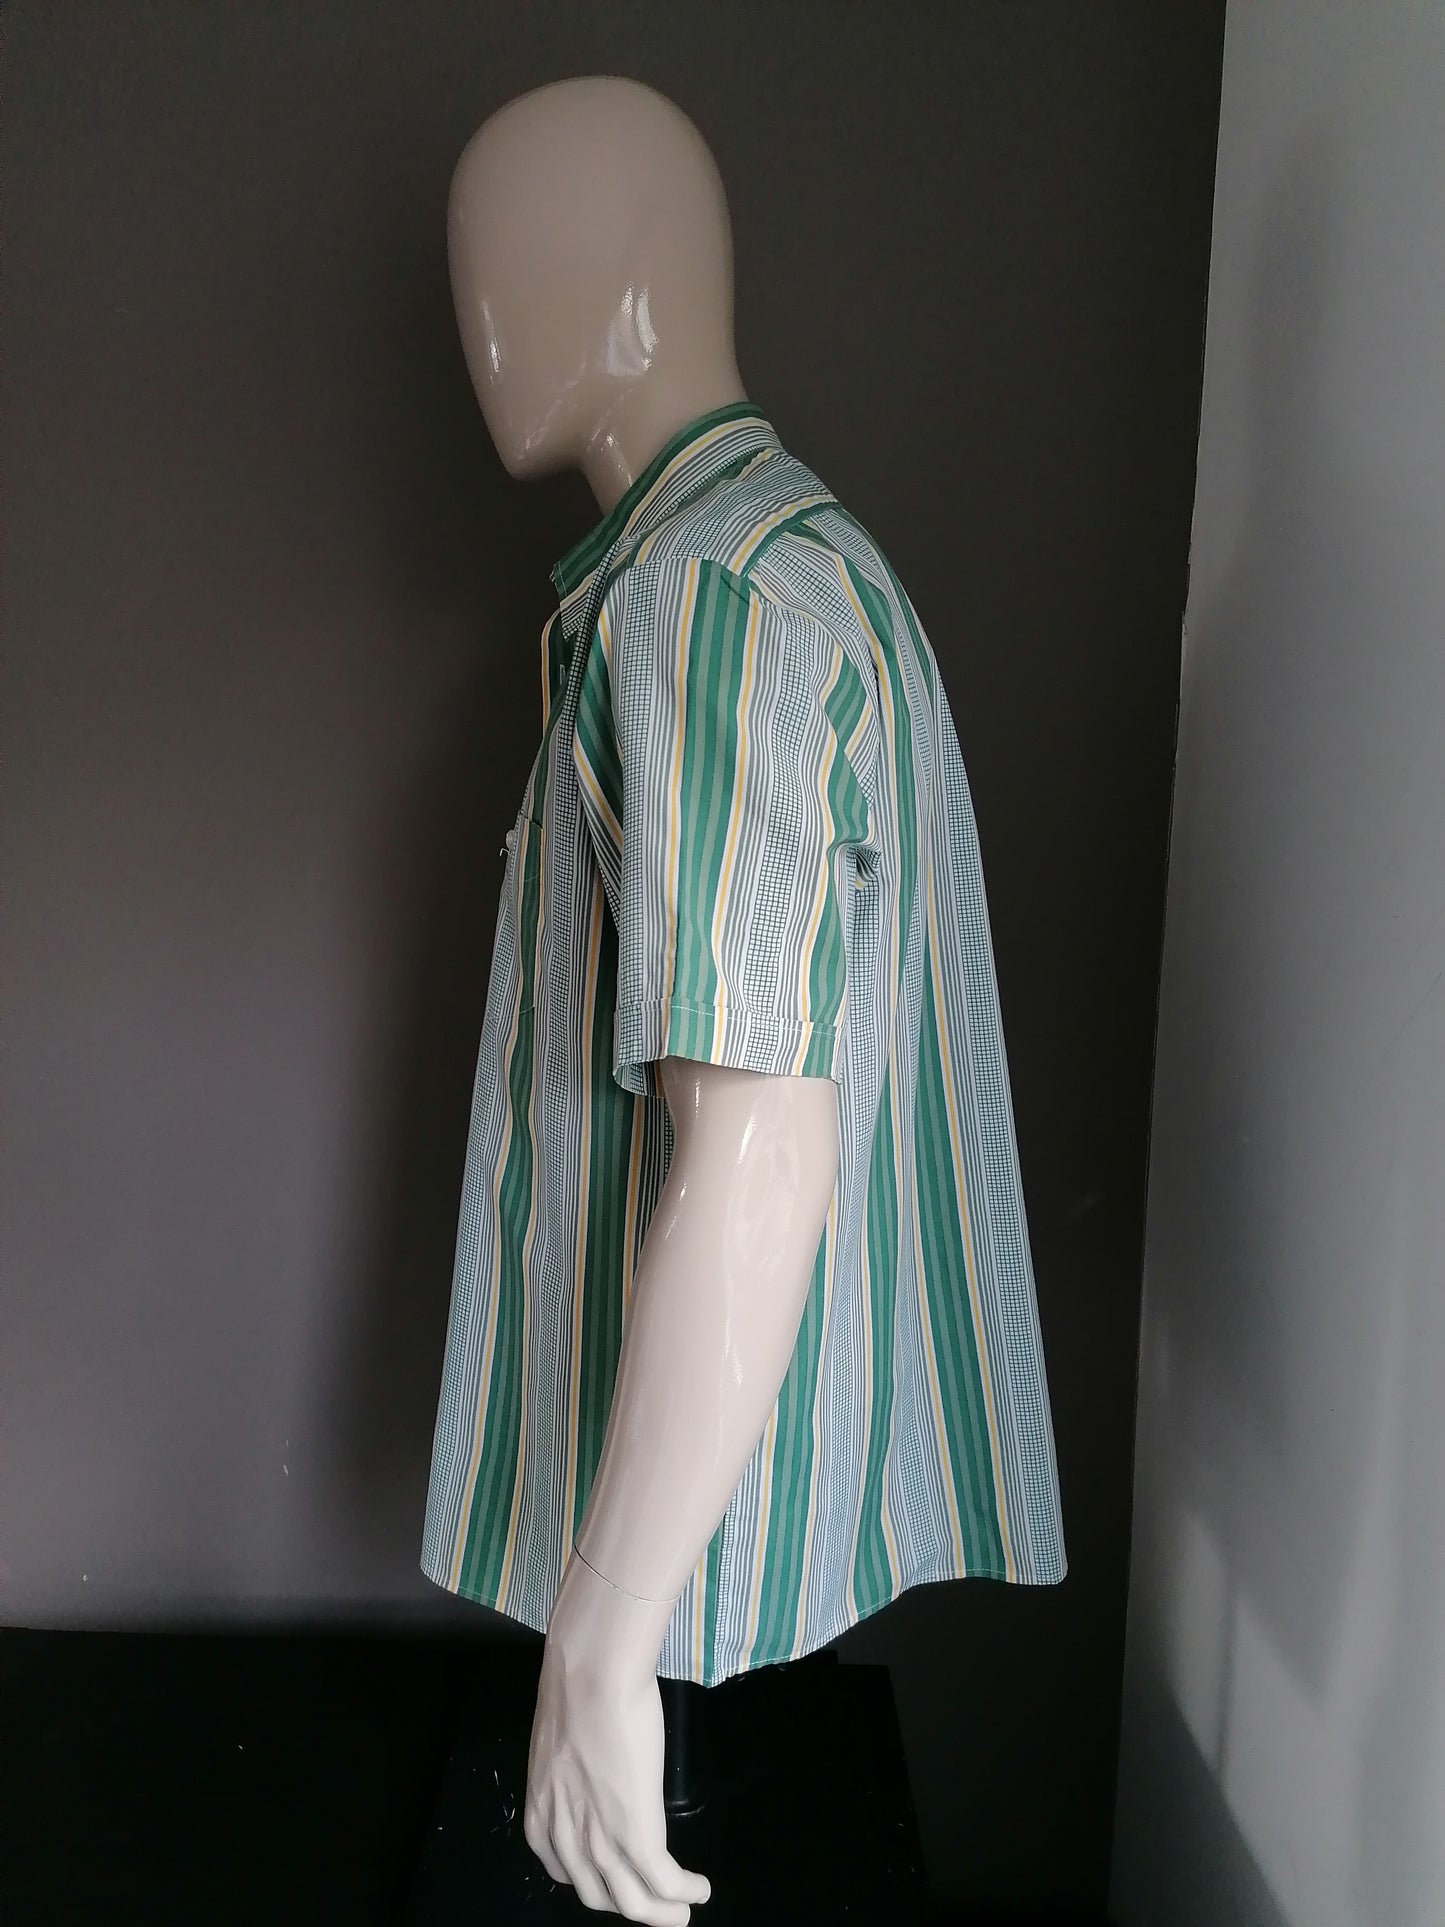 Vintage Nino Visconti Camisa Manga corta. Amarillo gris verde. Tamaño XXL / 2XL. 65% de poliéster y 35% de algodón